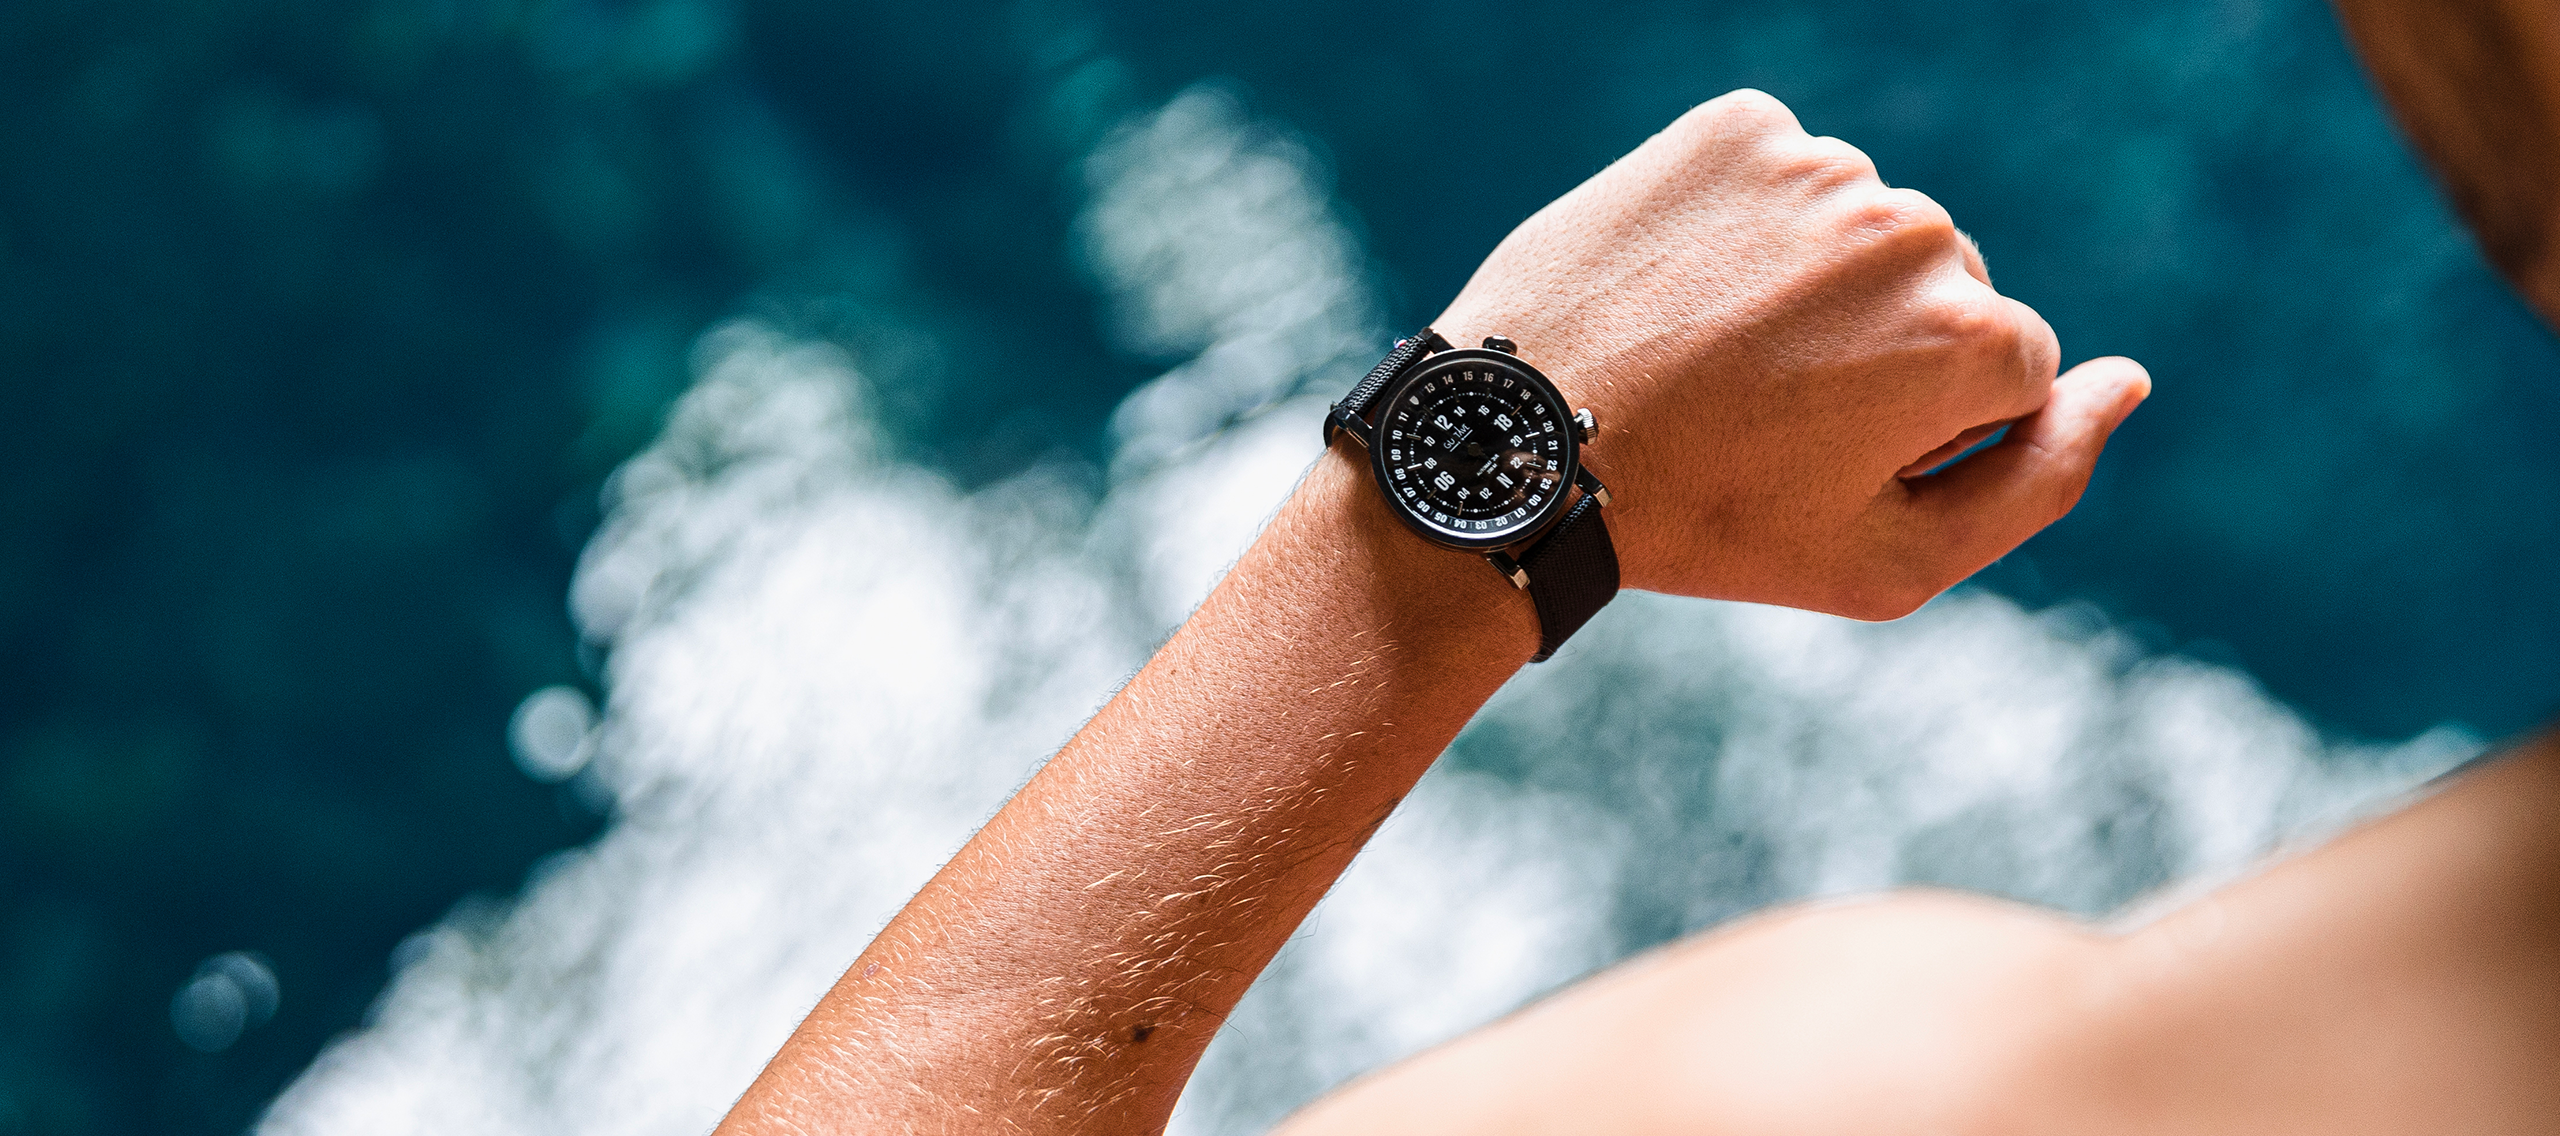 Cómo saber si un reloj es resistente al agua? ✓ Respuestas